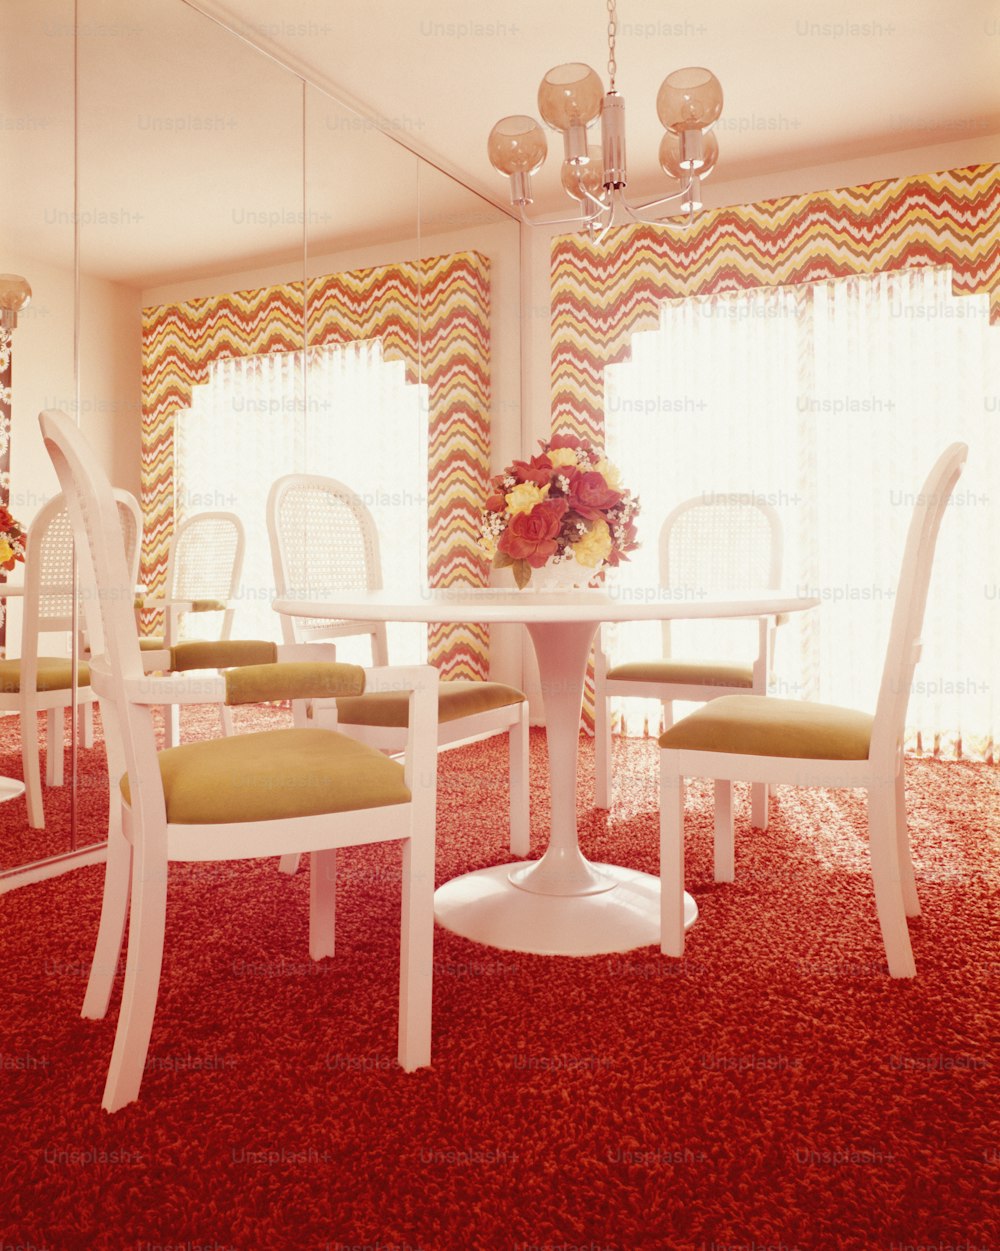 STATI UNITI - 1970 circa: Interno della sala da pranzo, con tavolo bianco e quattro sedie con piedistallo in plastica stampata.